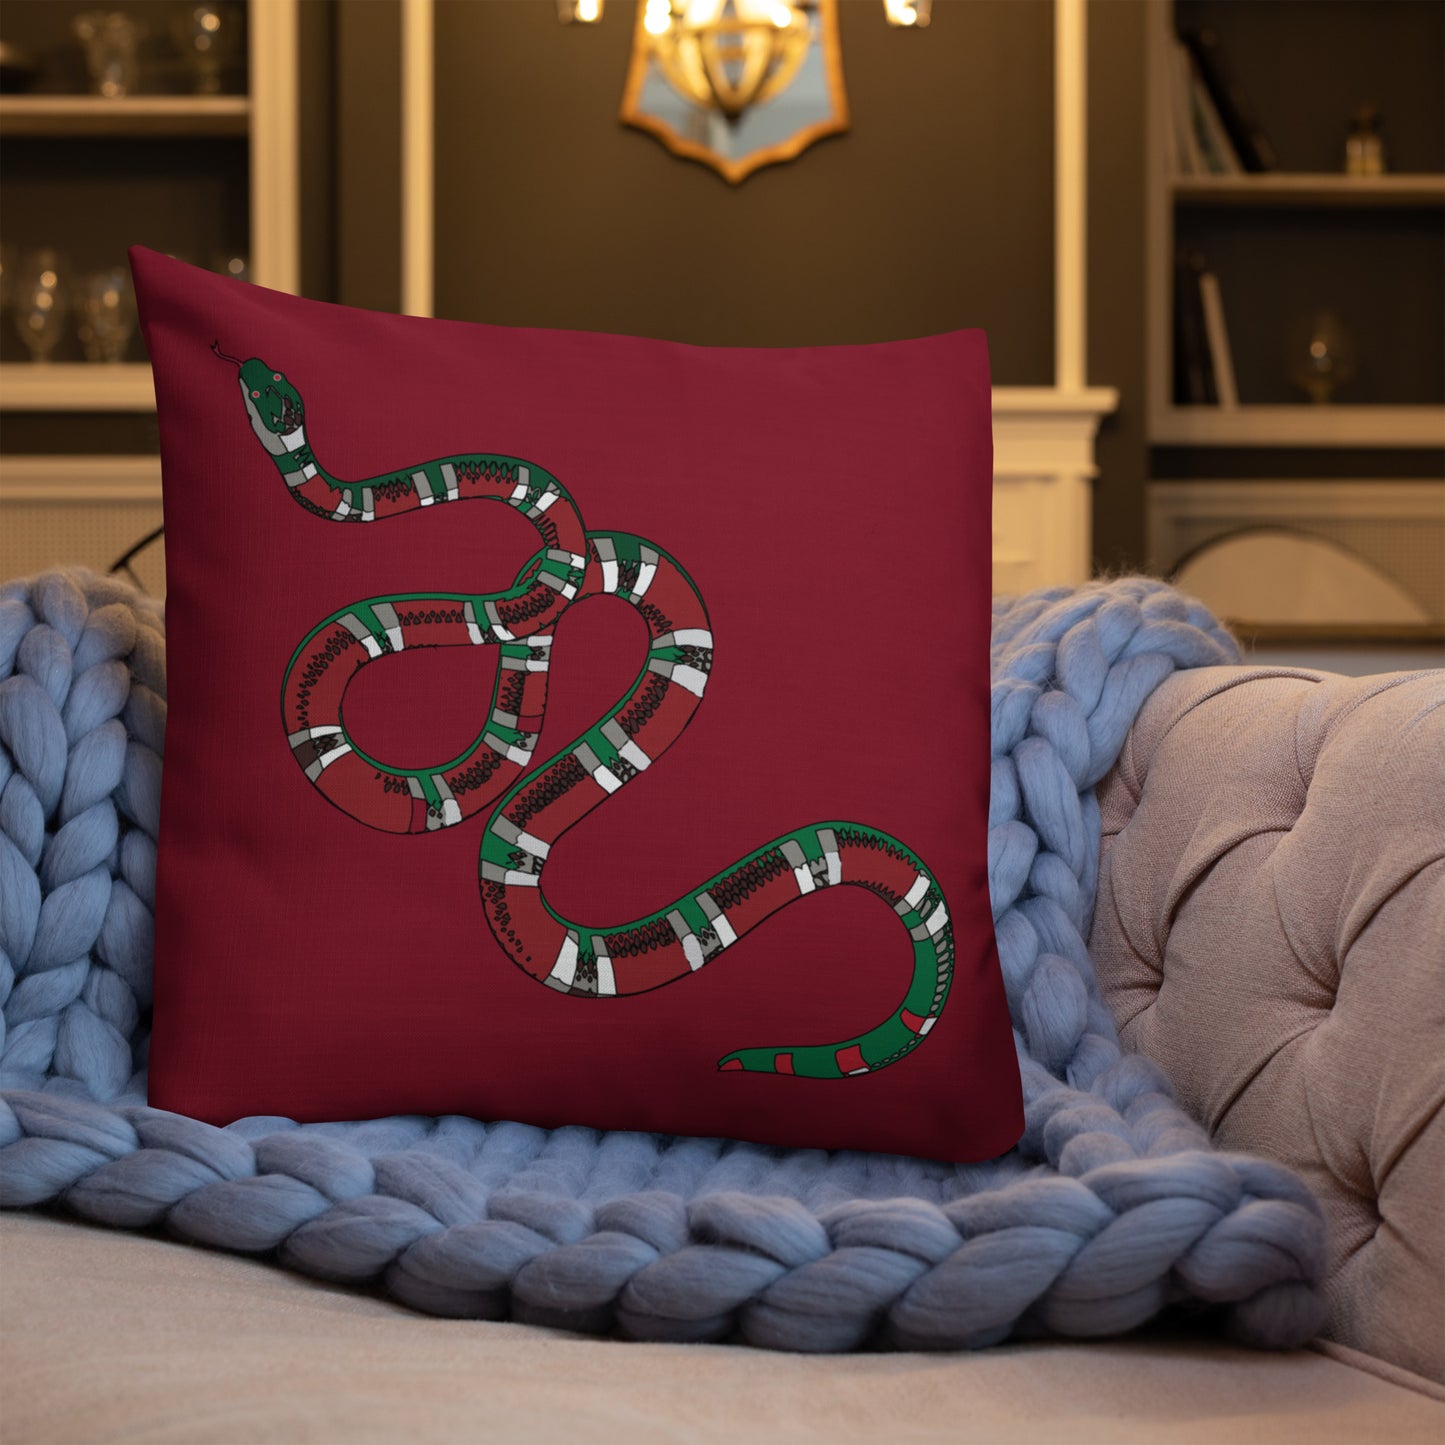 Designer Snakes On Red Premium Pillow - HipHatter